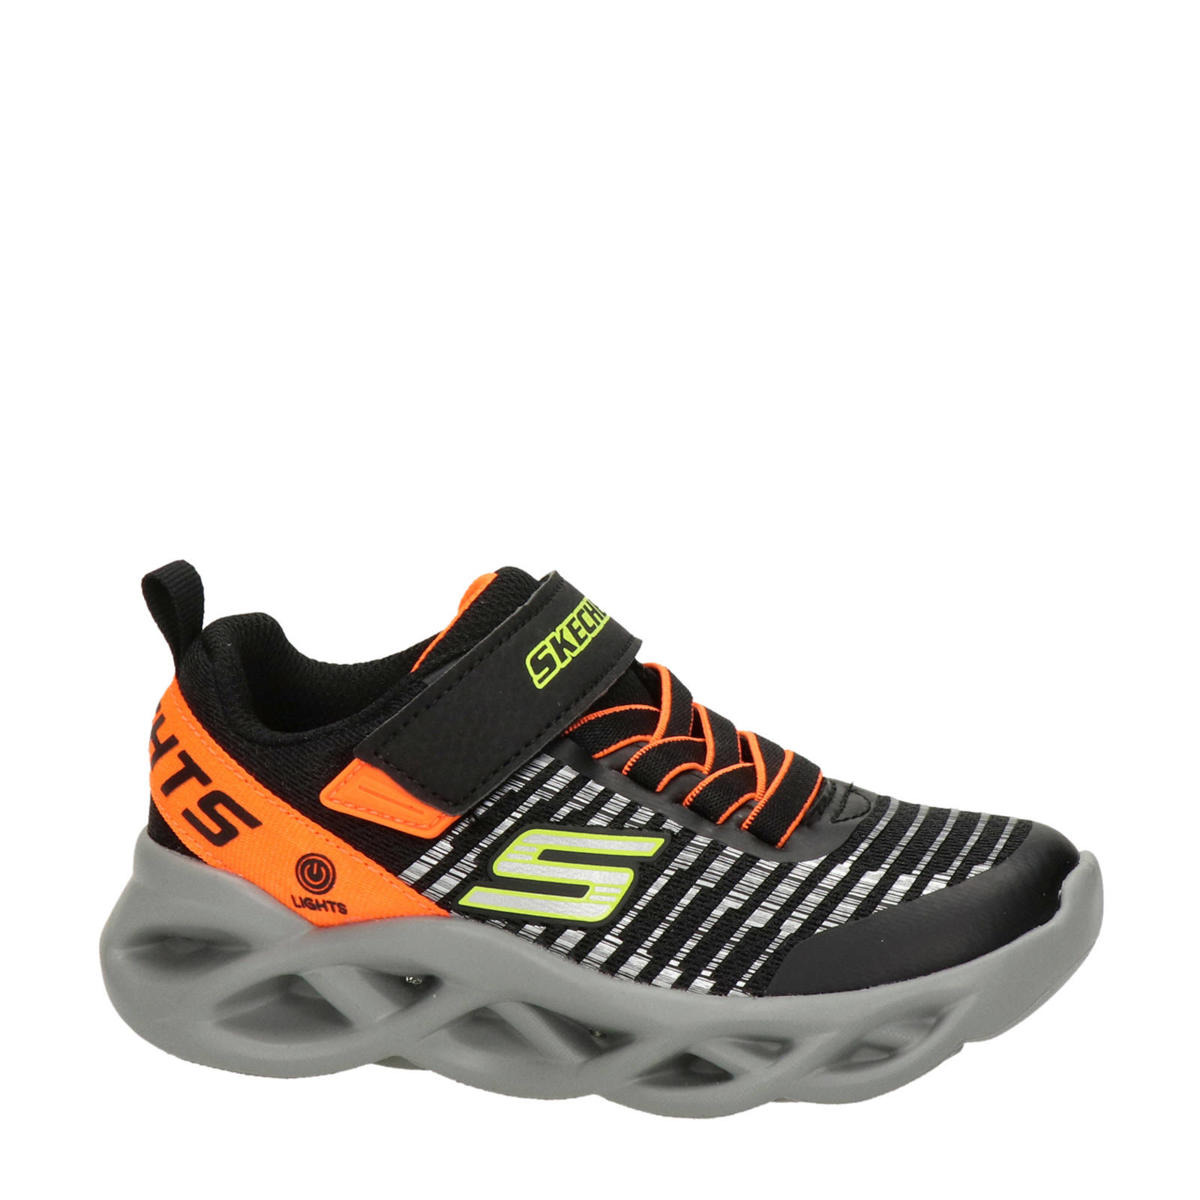 Empirisch Wijde selectie kiem Skechers Twisty Brights sneakers met lichtjes zwart/oranje | wehkamp